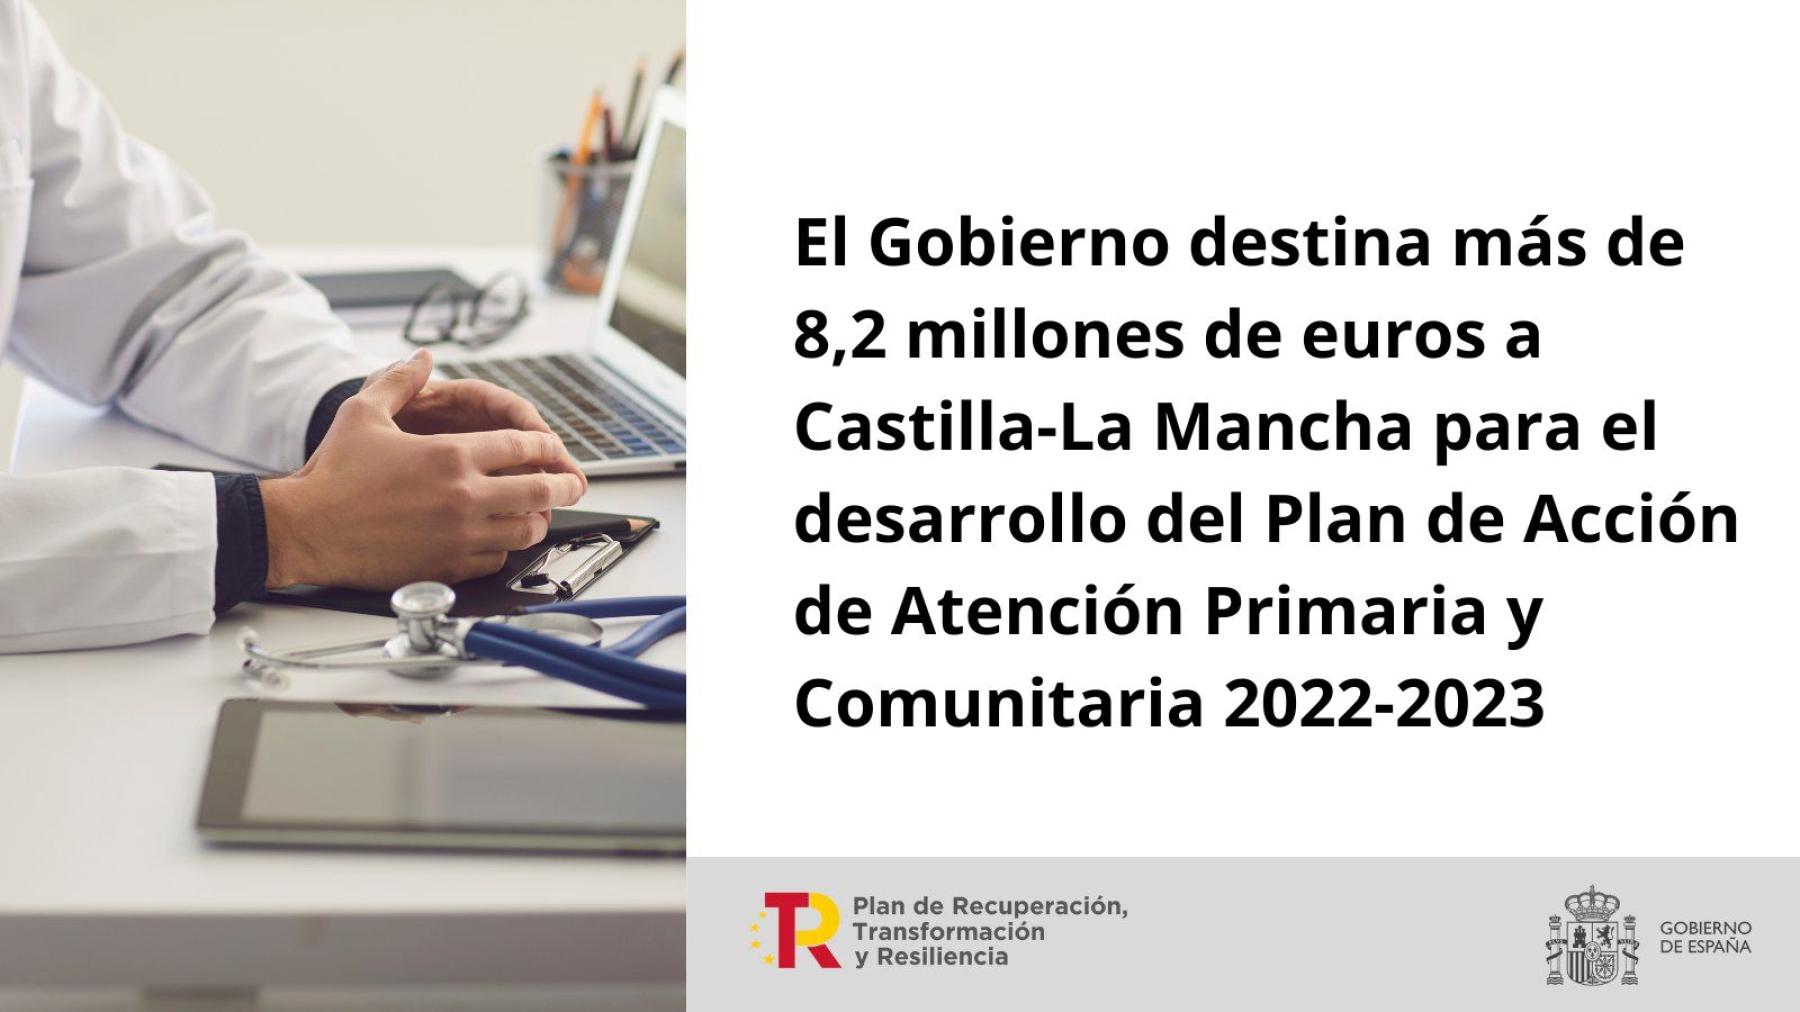 El Gobierno destina más de 8,2 millones de euros a Castilla-La Mancha para el desarrollo del Plan de Acción de Atención Primaria y Comunitaria 2022-2023